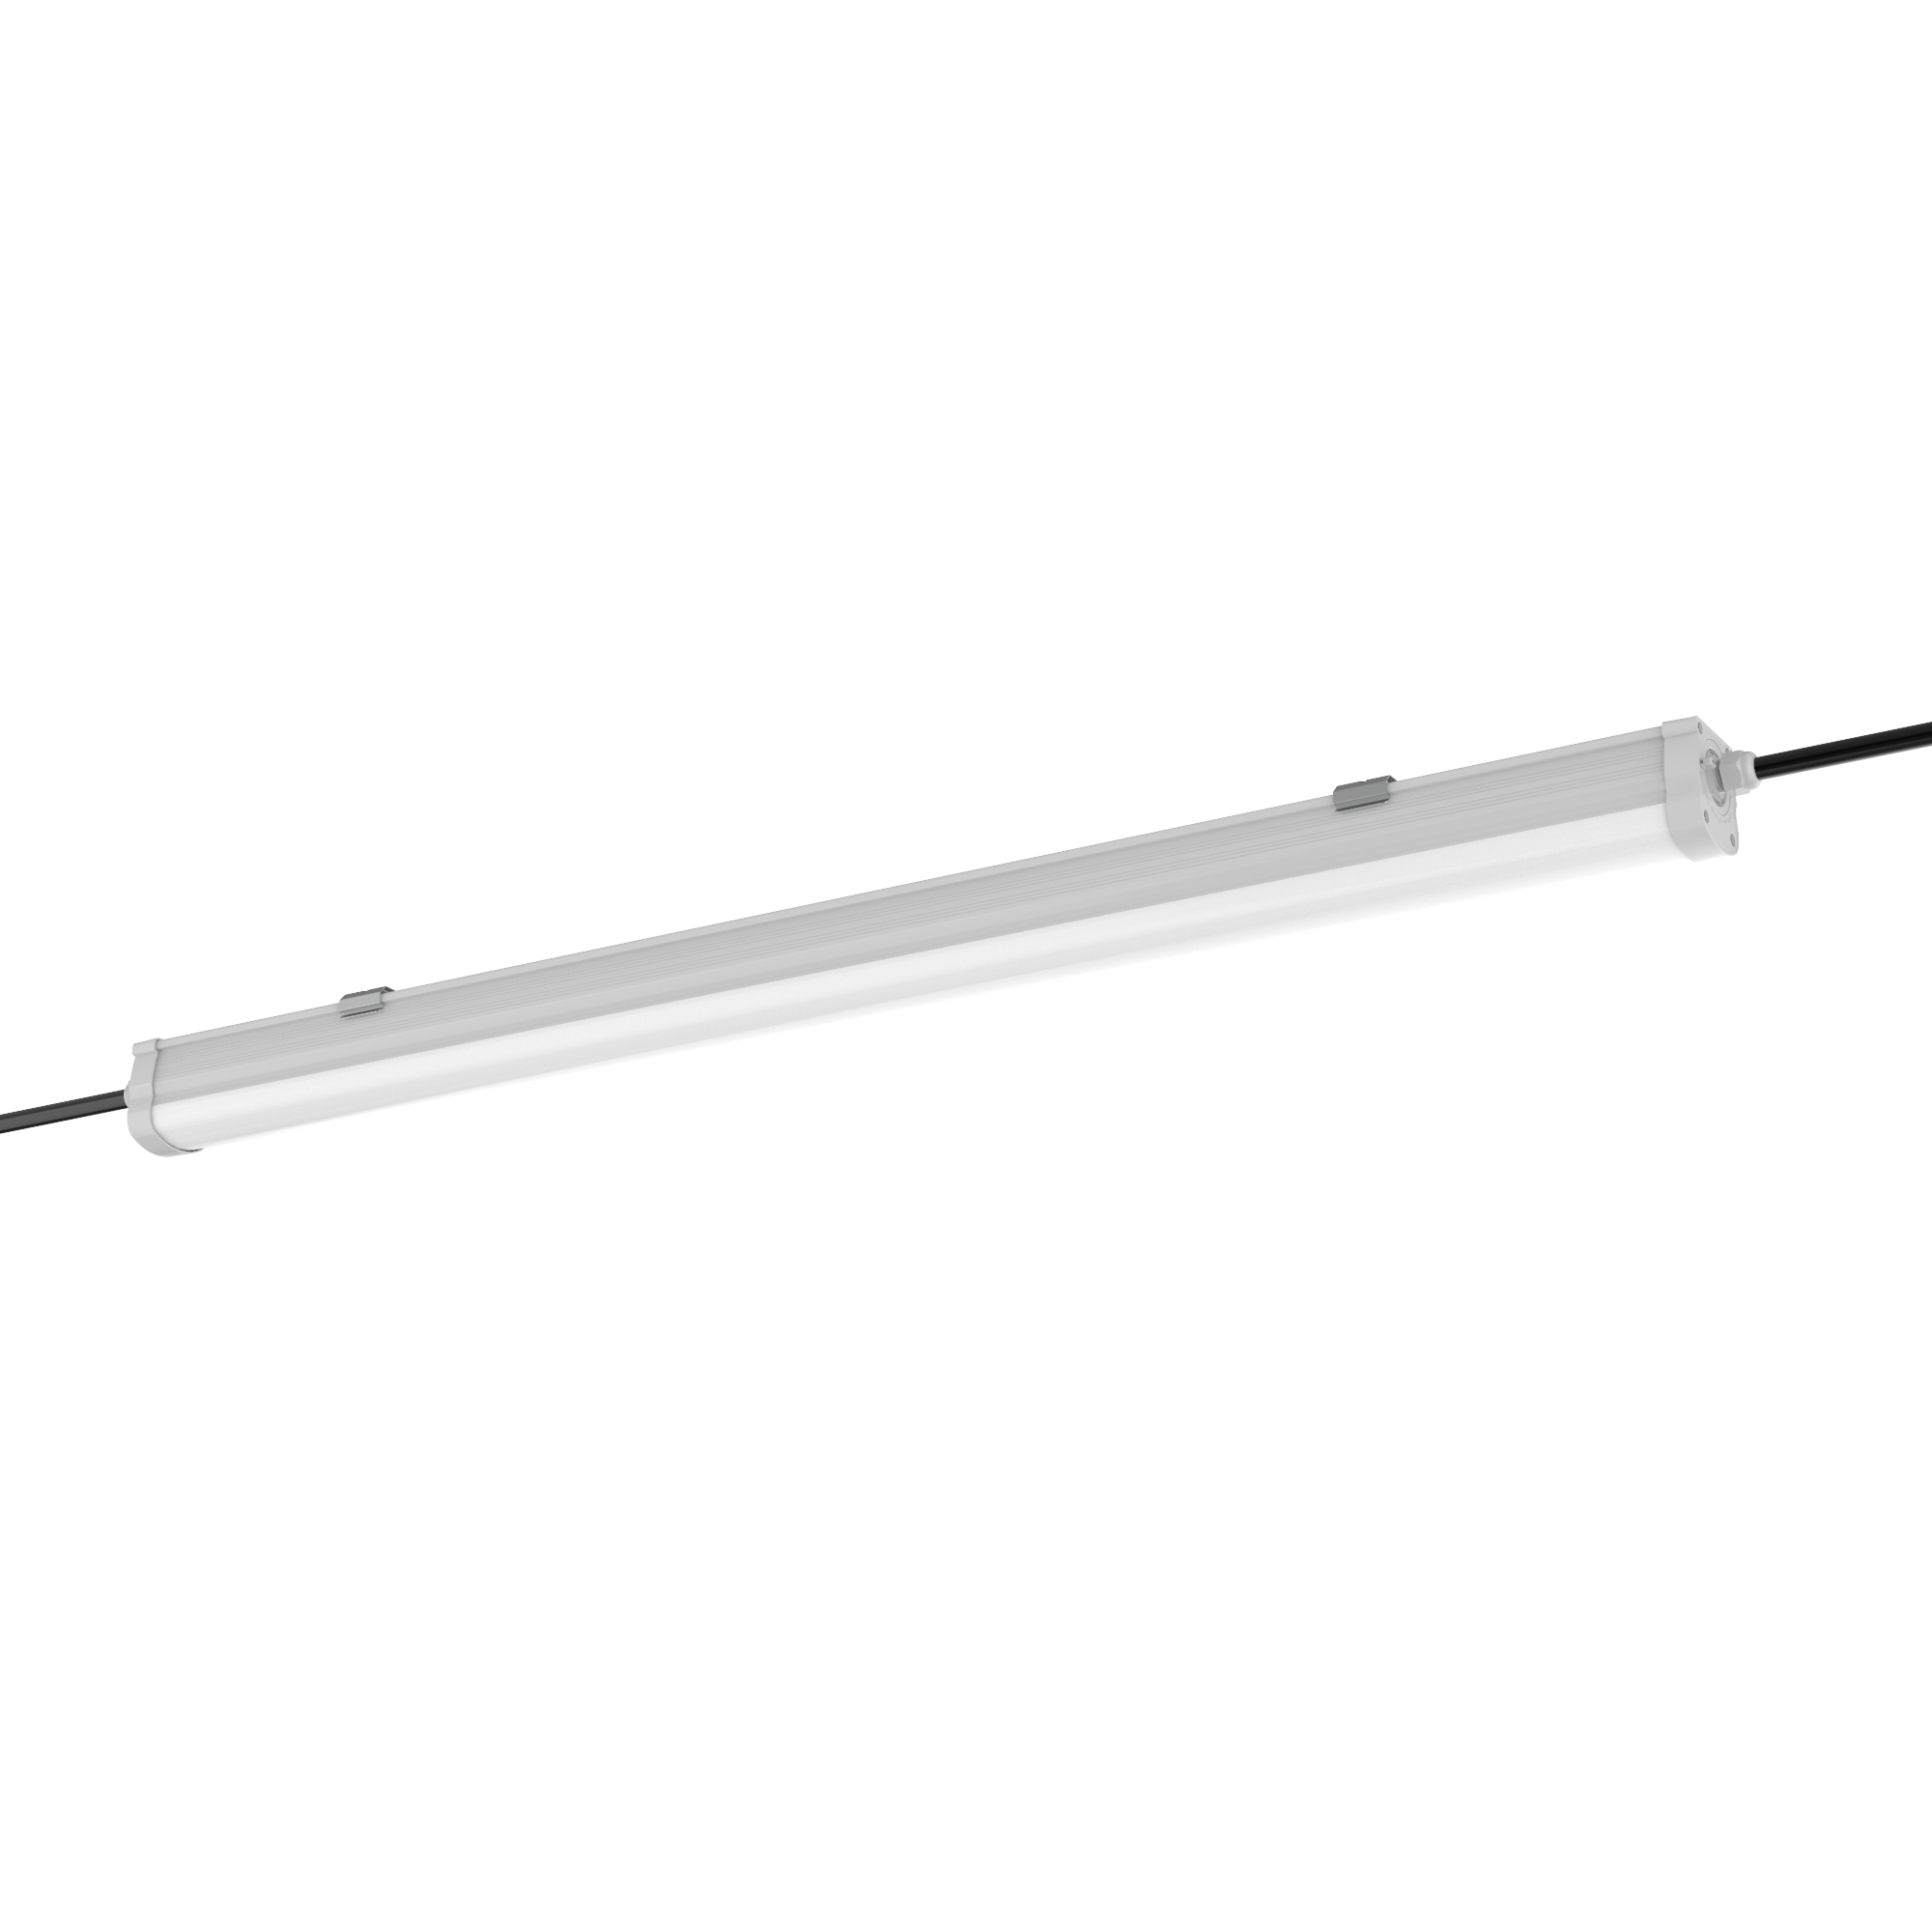 Engel LED Feuchtraumleuchte 60-150cm - IP65 Wasserdicht, Reihenschaltu